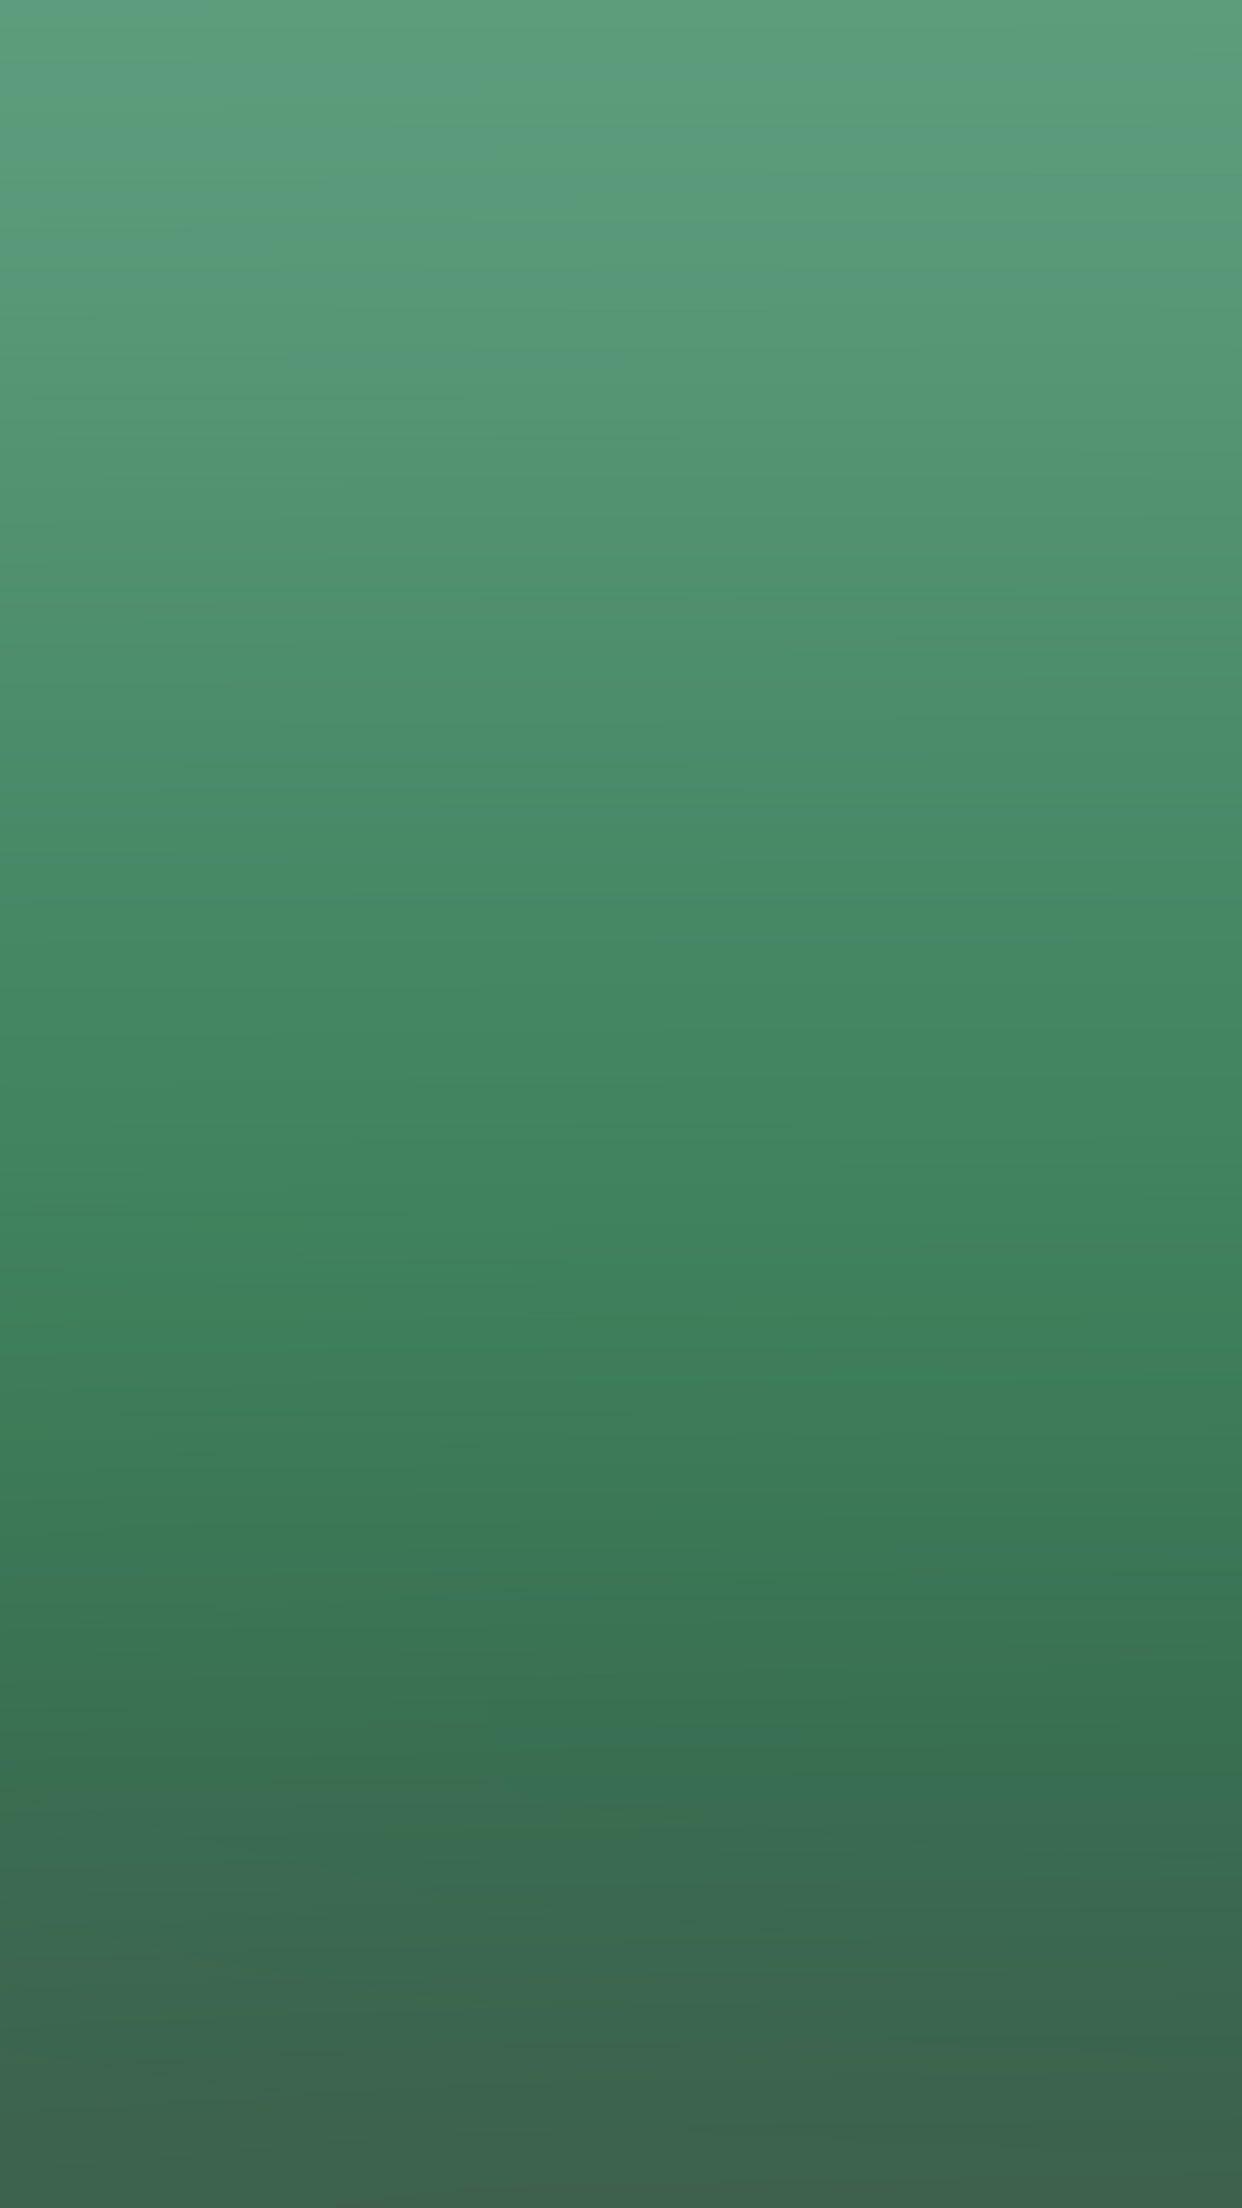 iPhone7 wallpaper. green emerald gradation